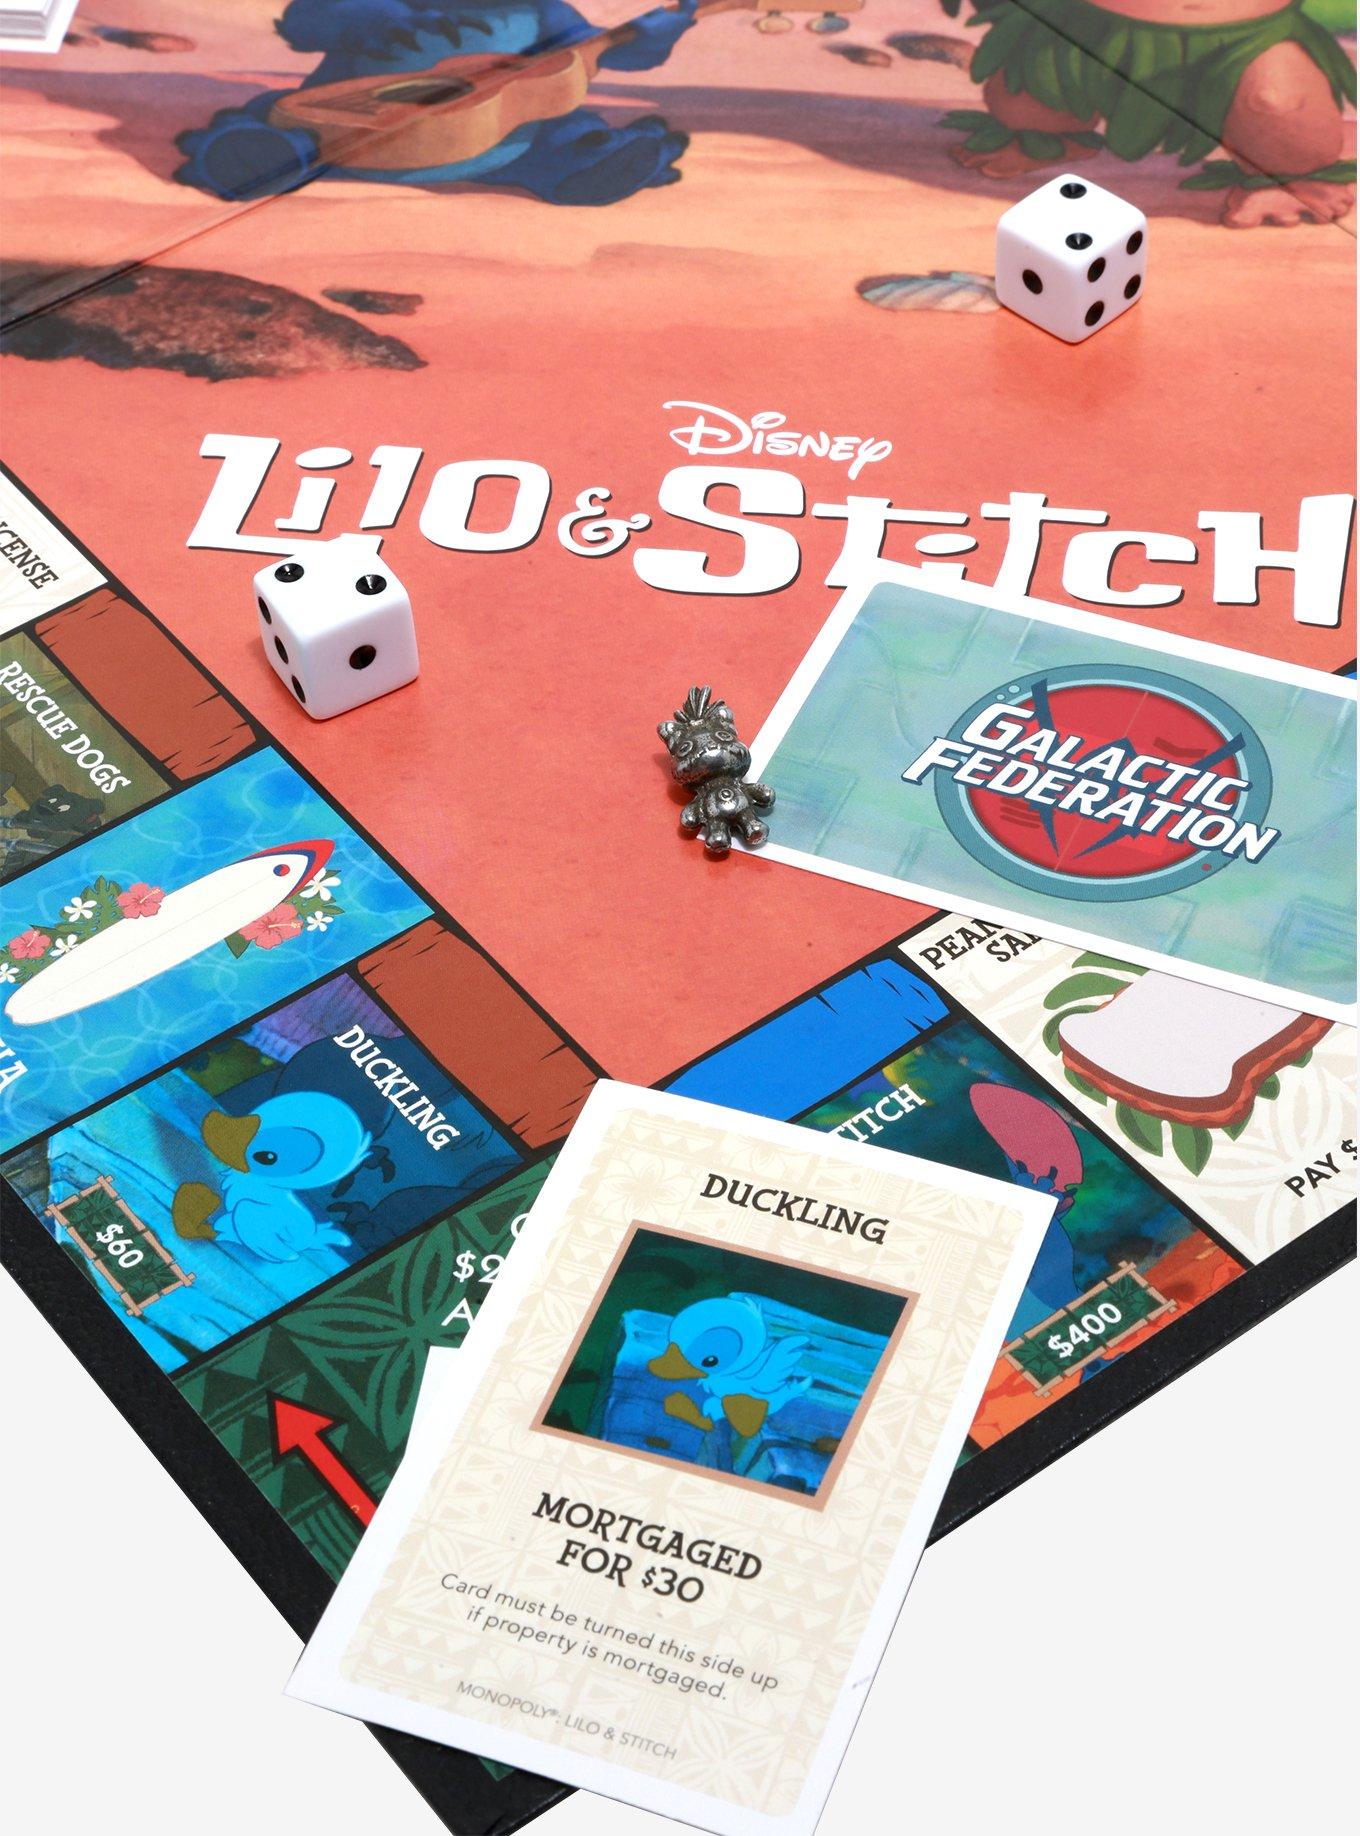 Jeu - Lilo & Stitch - Monopoly Lilo & Stitch